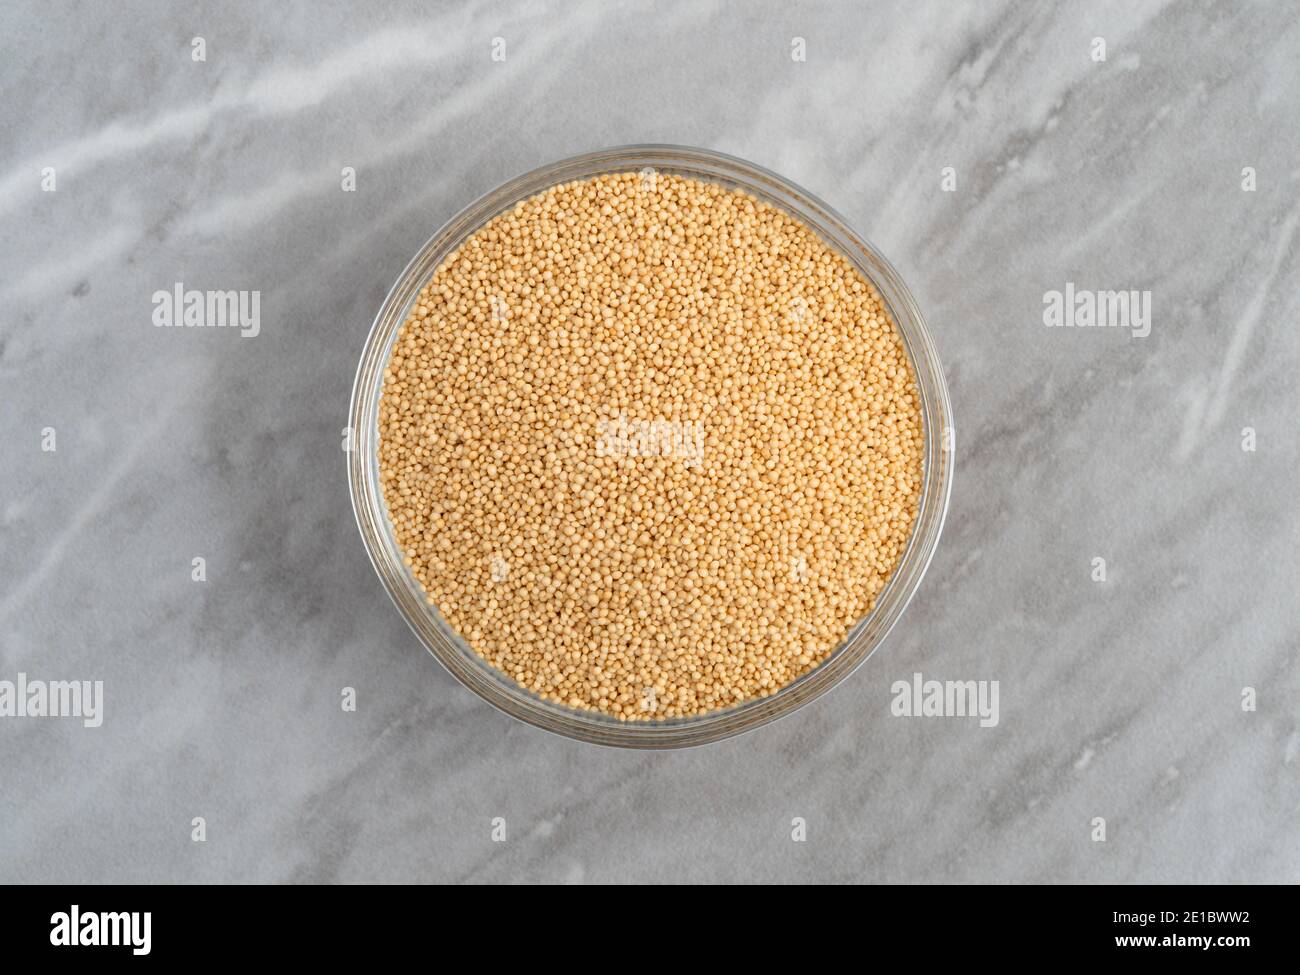 Vue de dessus d'un bol en verre rempli de graines d'amaranth bio sur un comptoir en marbre gris éclairé par la lumière naturelle. Banque D'Images